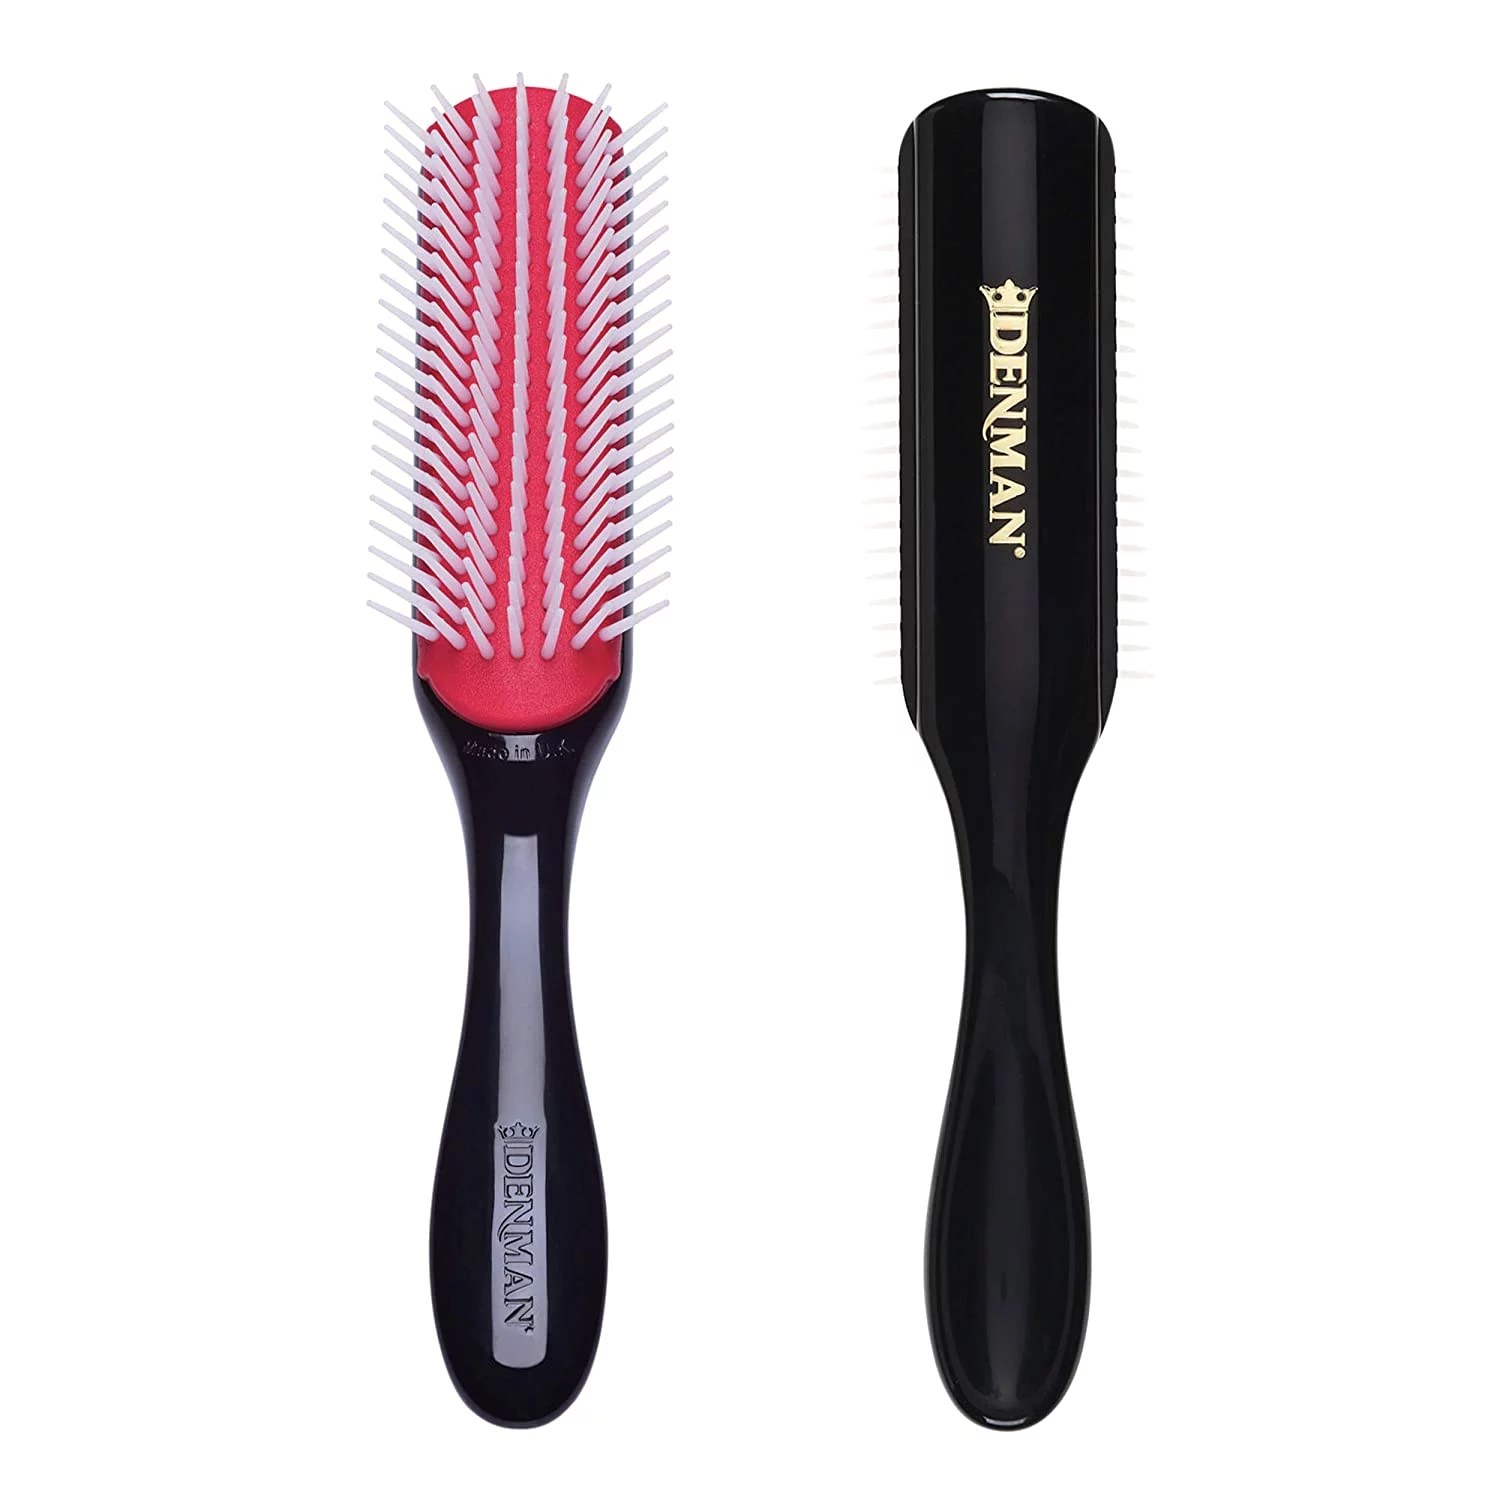 Denman hair brush